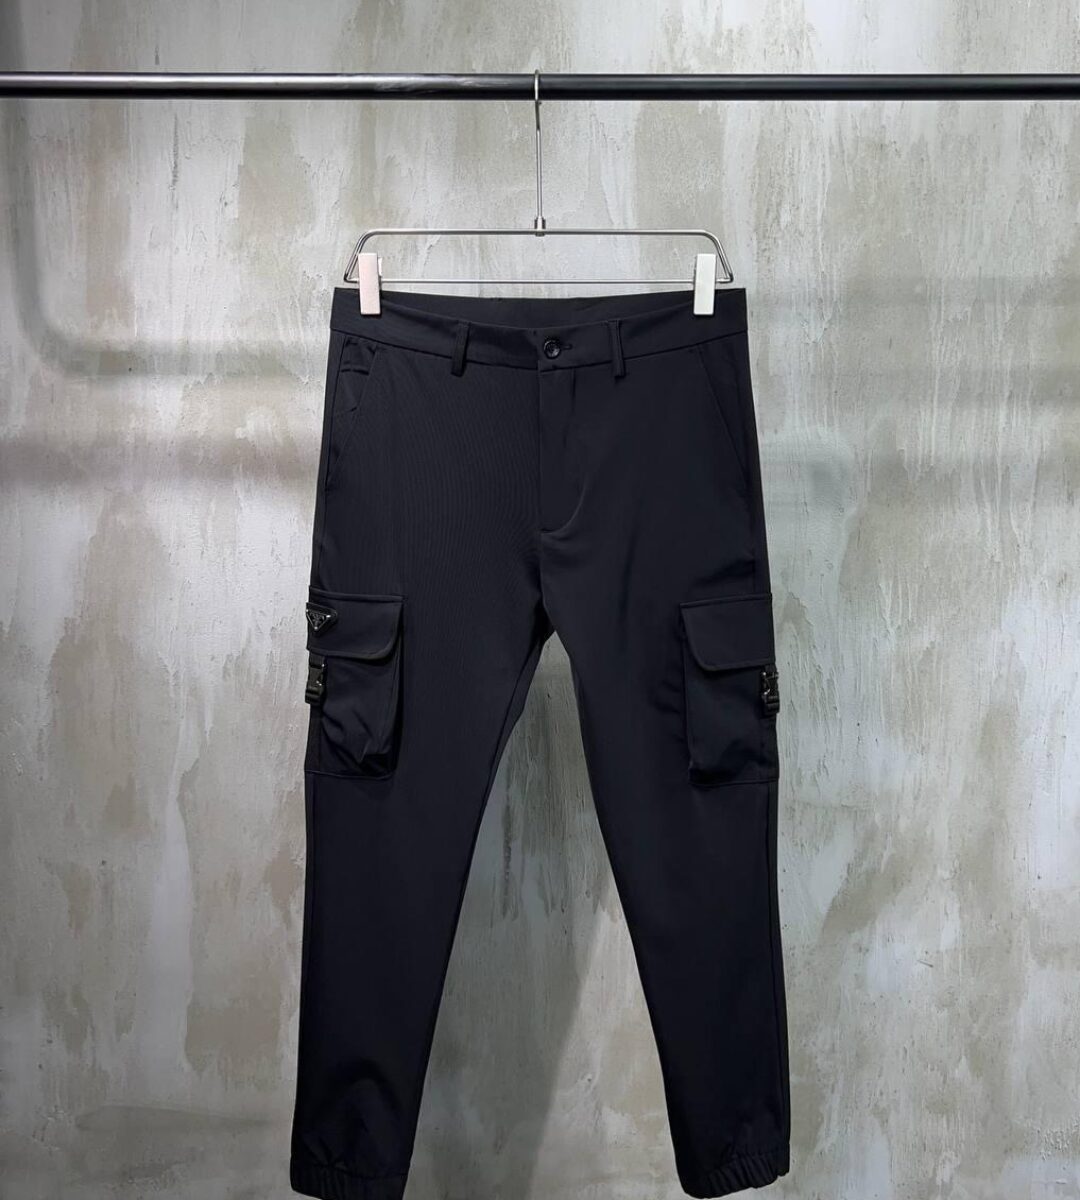 Prada Re-Nylon Pantalon Black